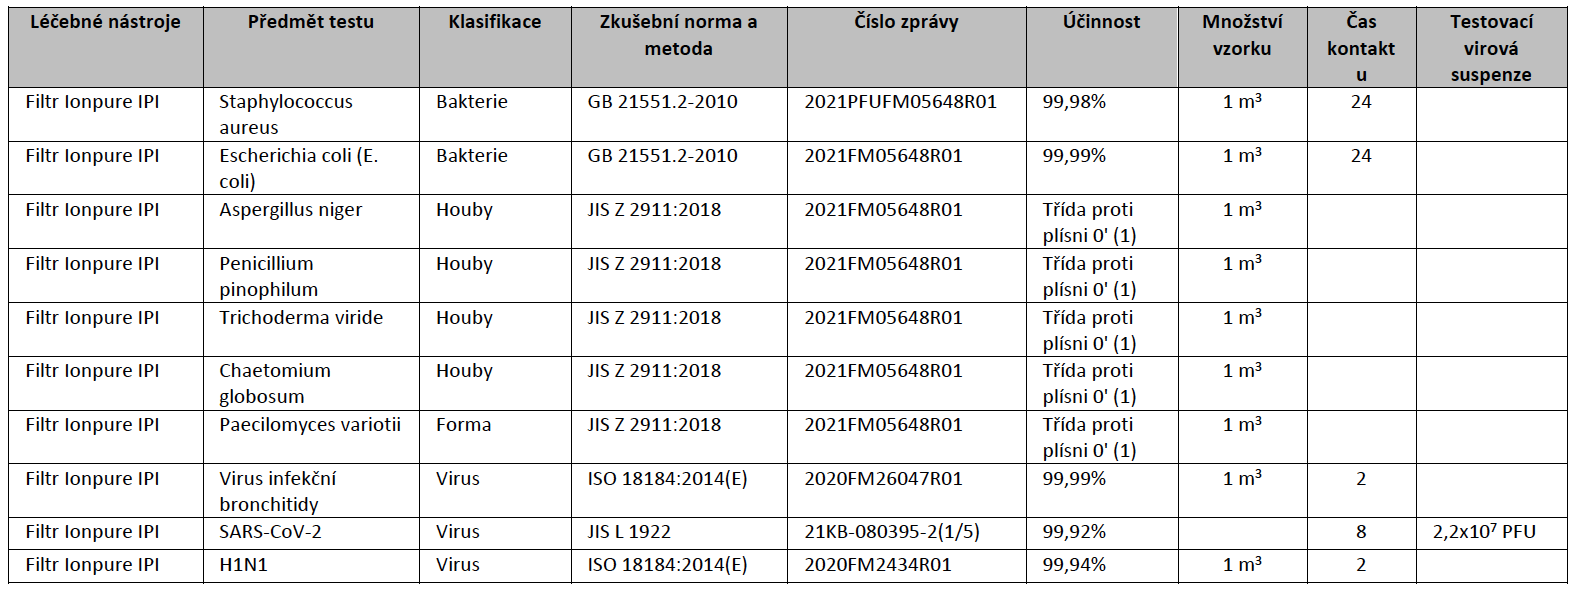 Tabulka a seznam virů, které umí zneškodnit Daikin Perfera 2024